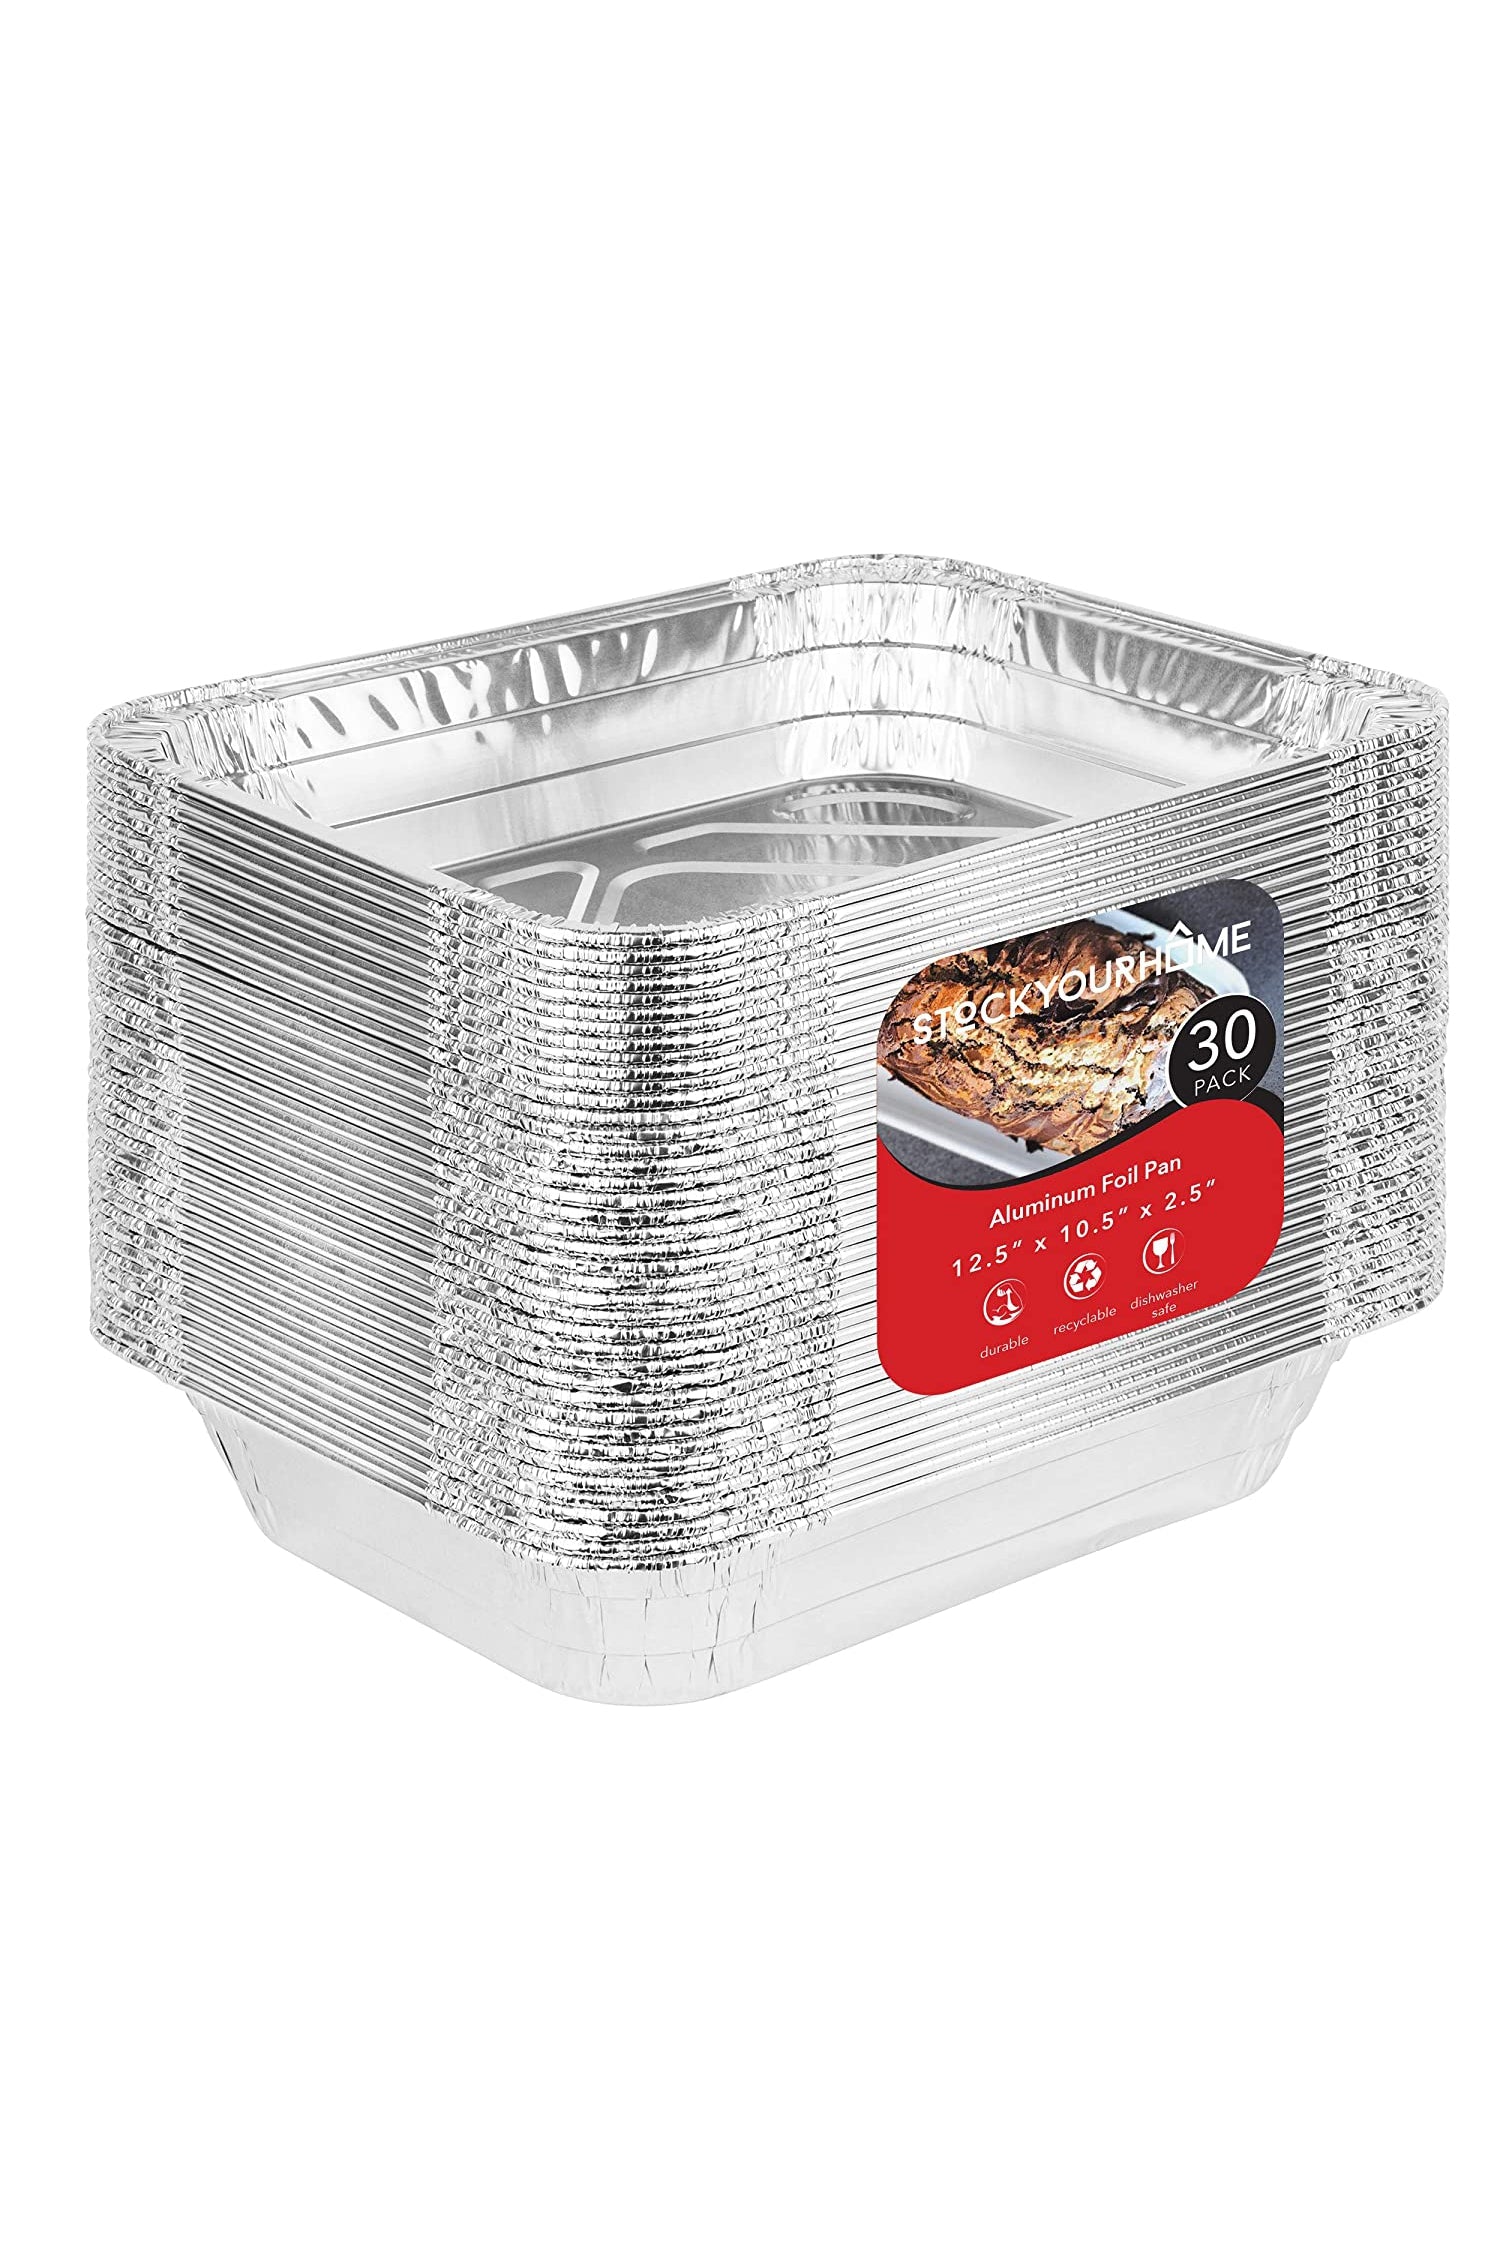 Aluminum Pans 9x13 Disposable Foil Pans (30 Pack) - Half Size Steam Ta –  Stock Your Home